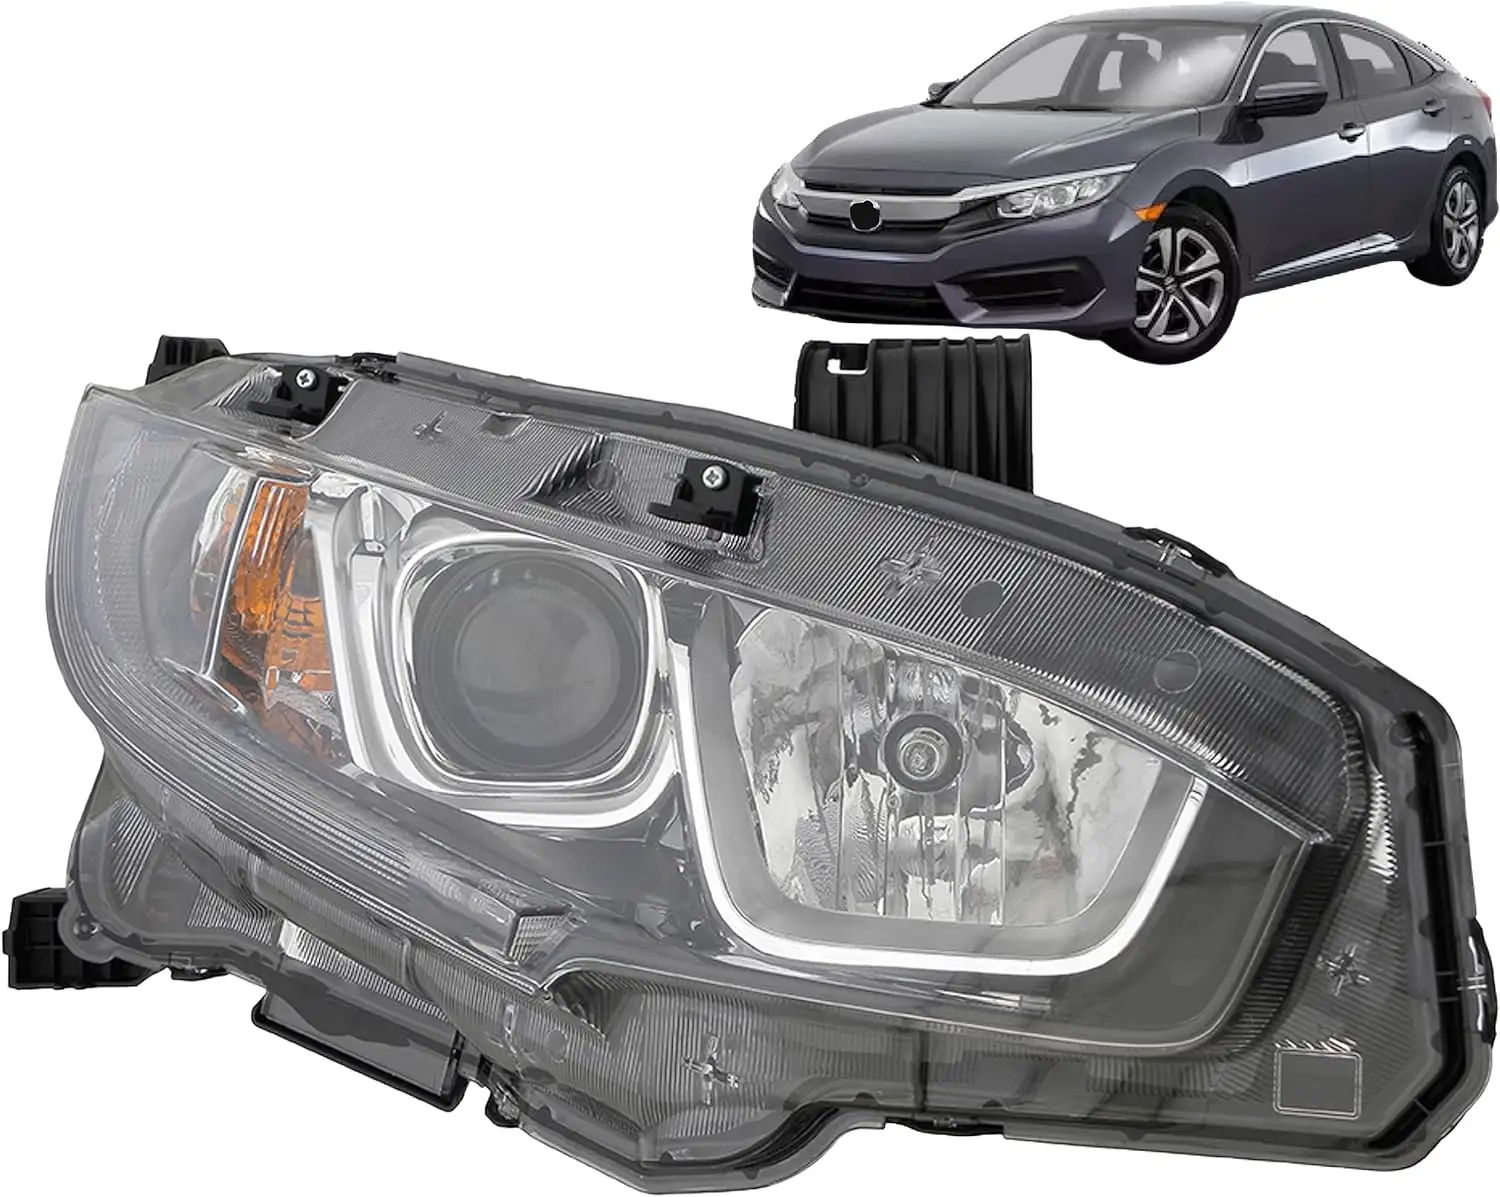 Honda Civic için düşük 16-19 ön sağ/geçiş far kafa lambası sol sağ 33100-TBA-A01 33150-TBA-A01 OEM 2016 2017 2018 2019